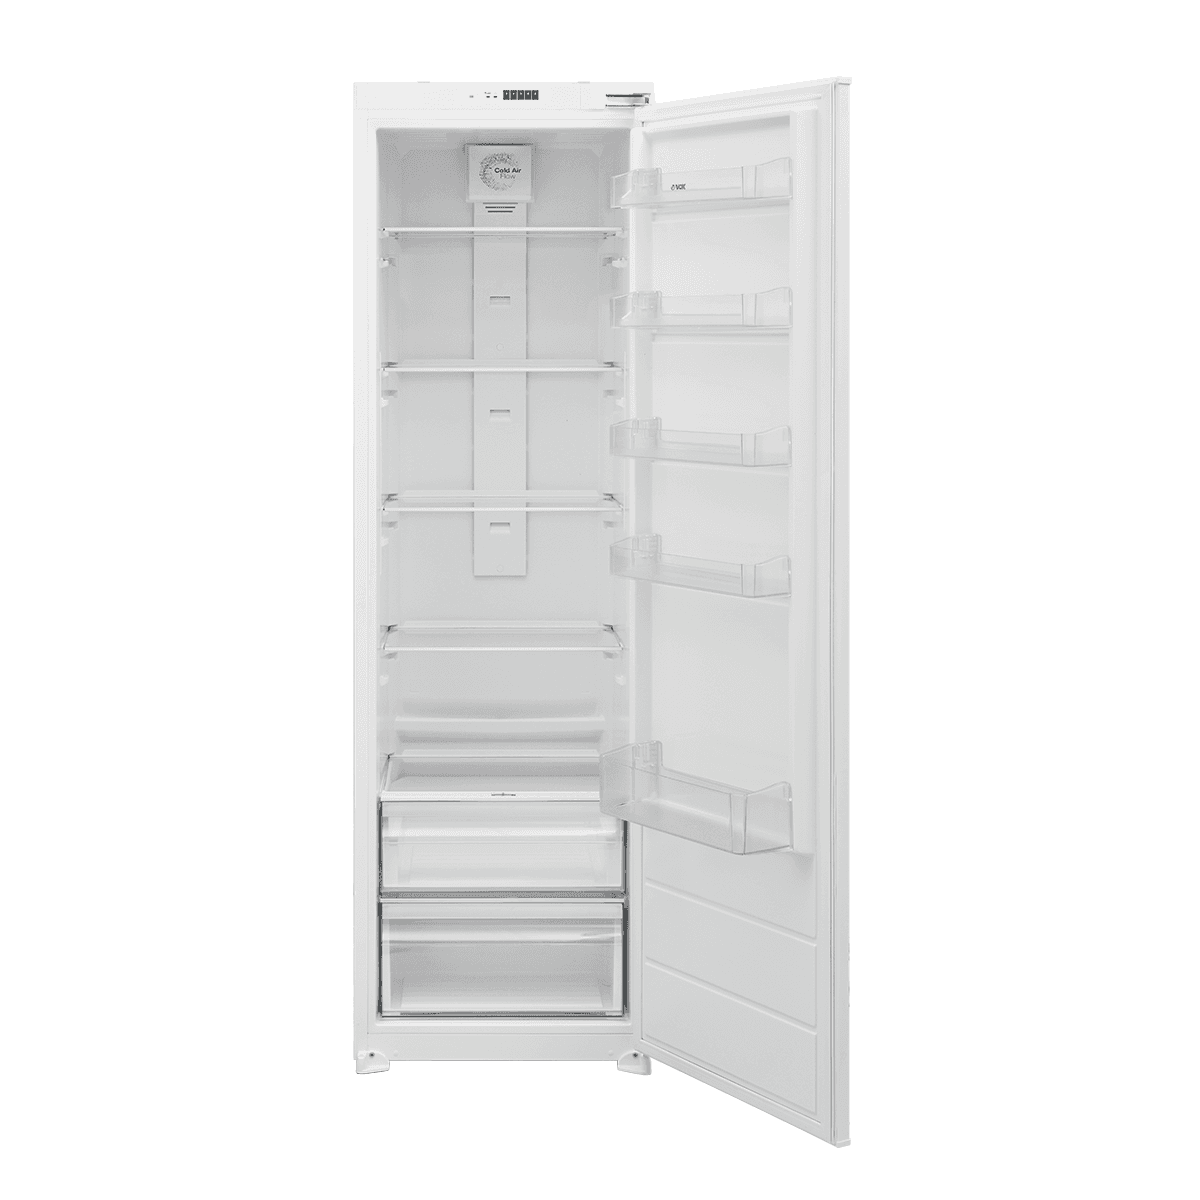 Selected image for VOX IKS 2790 E Ugradni frižider bela